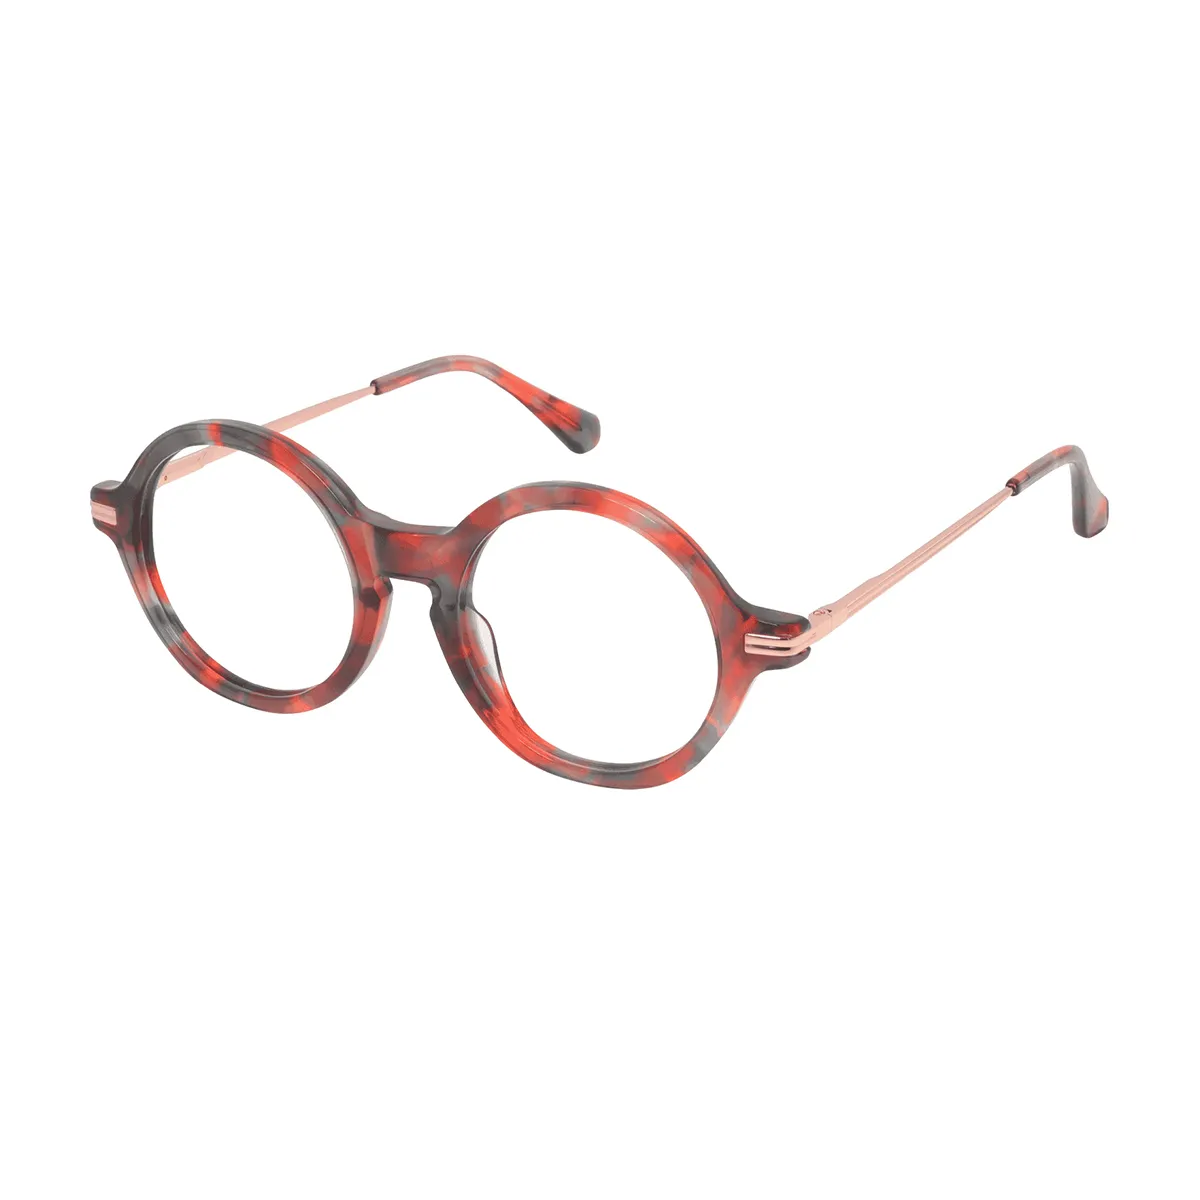 Bajer - Round Tortoiseshell Glasses for Men & Women - EFE